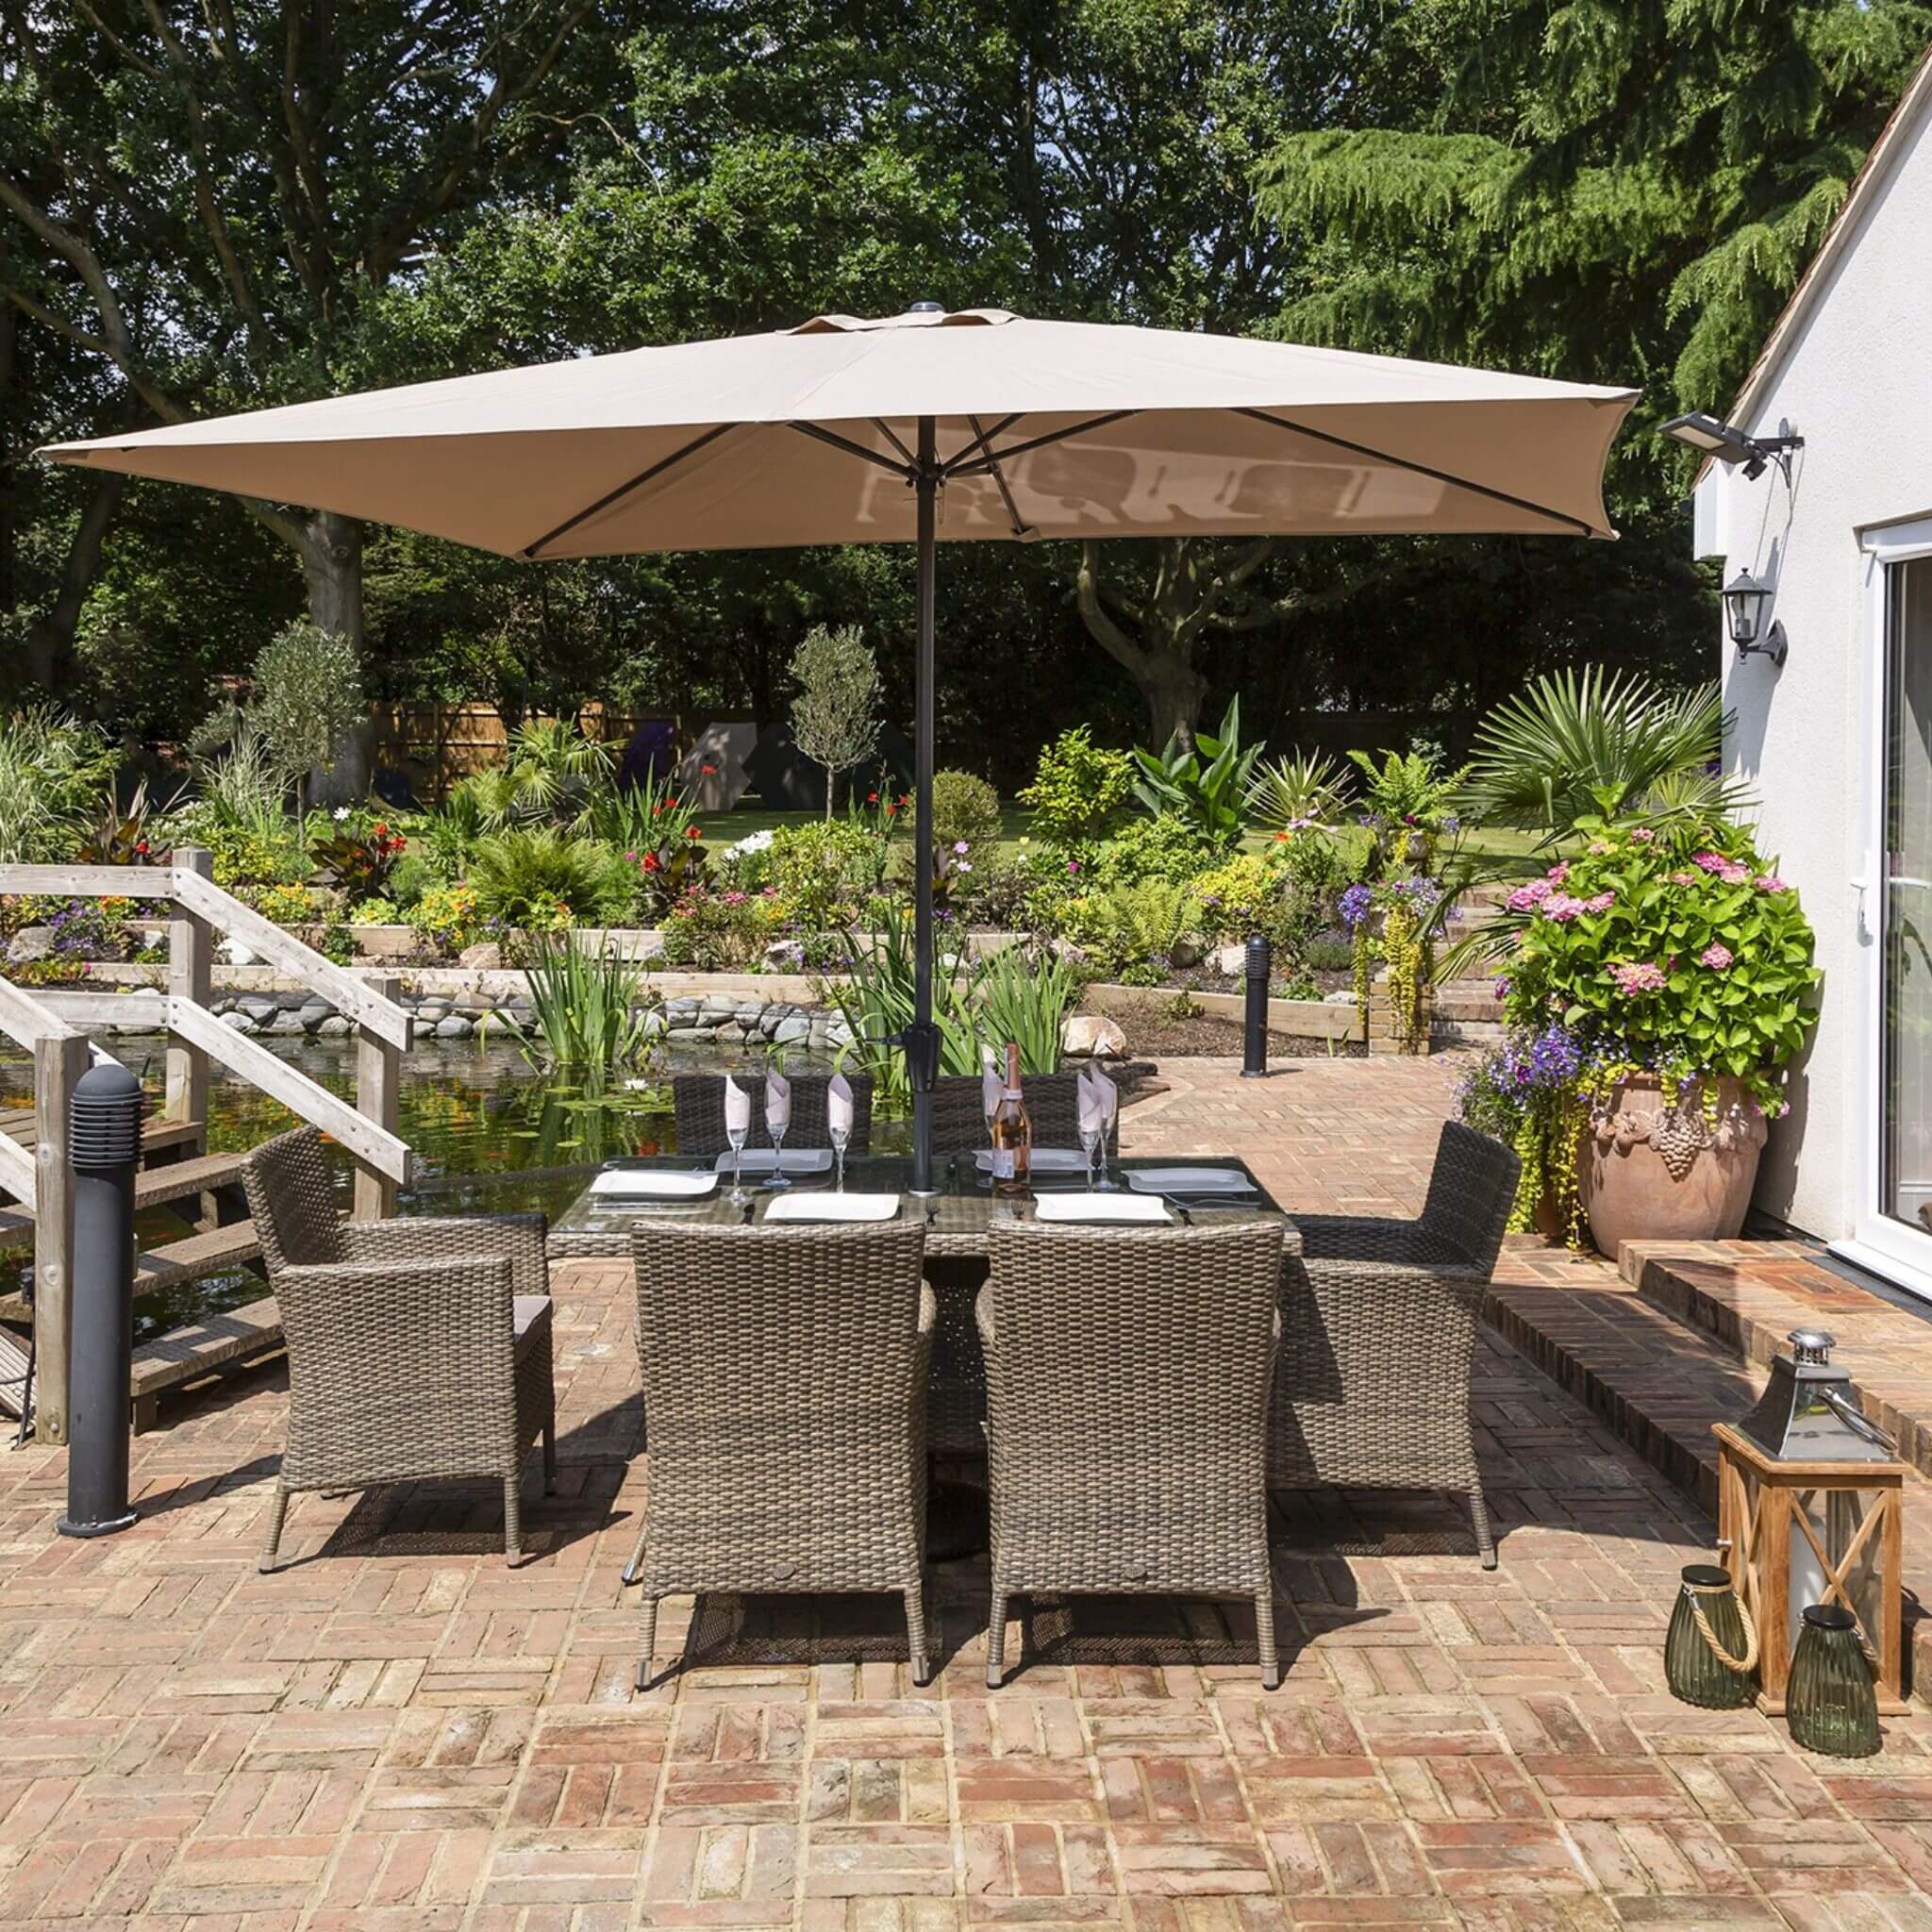 Katie Blake Sandringham 6 Seat Rattan Garden Dining Chairs, Parasol & Rectangular Table Set